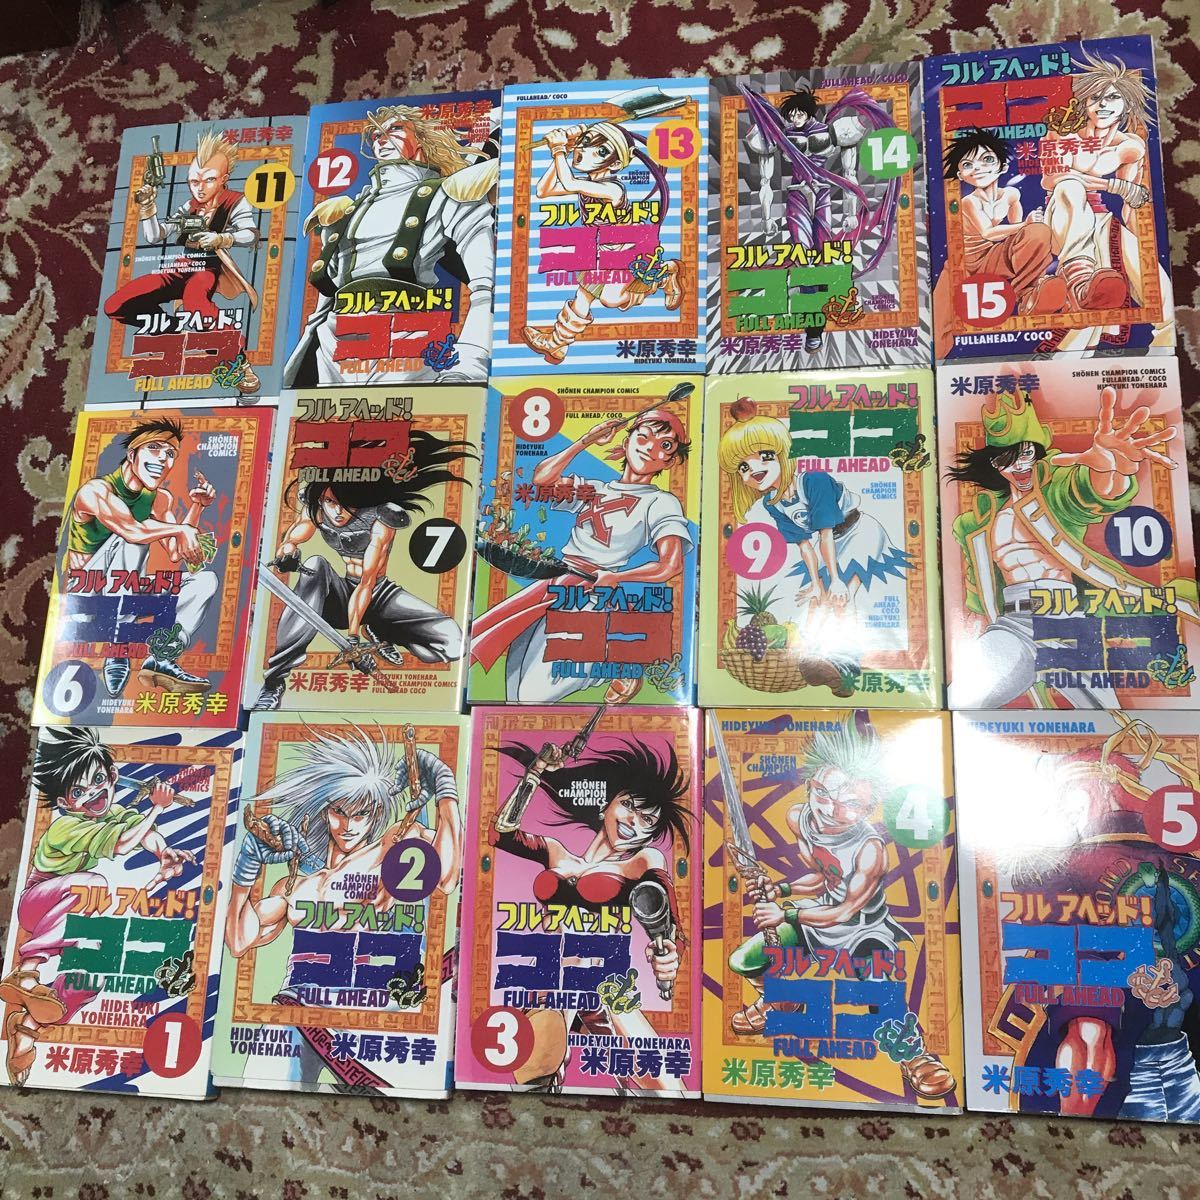  Akita книжный магазин Champion комиксы [ полный a head! здесь ]( все 29 шт + дополнительная глава 1 шт ) рис . превосходящий .